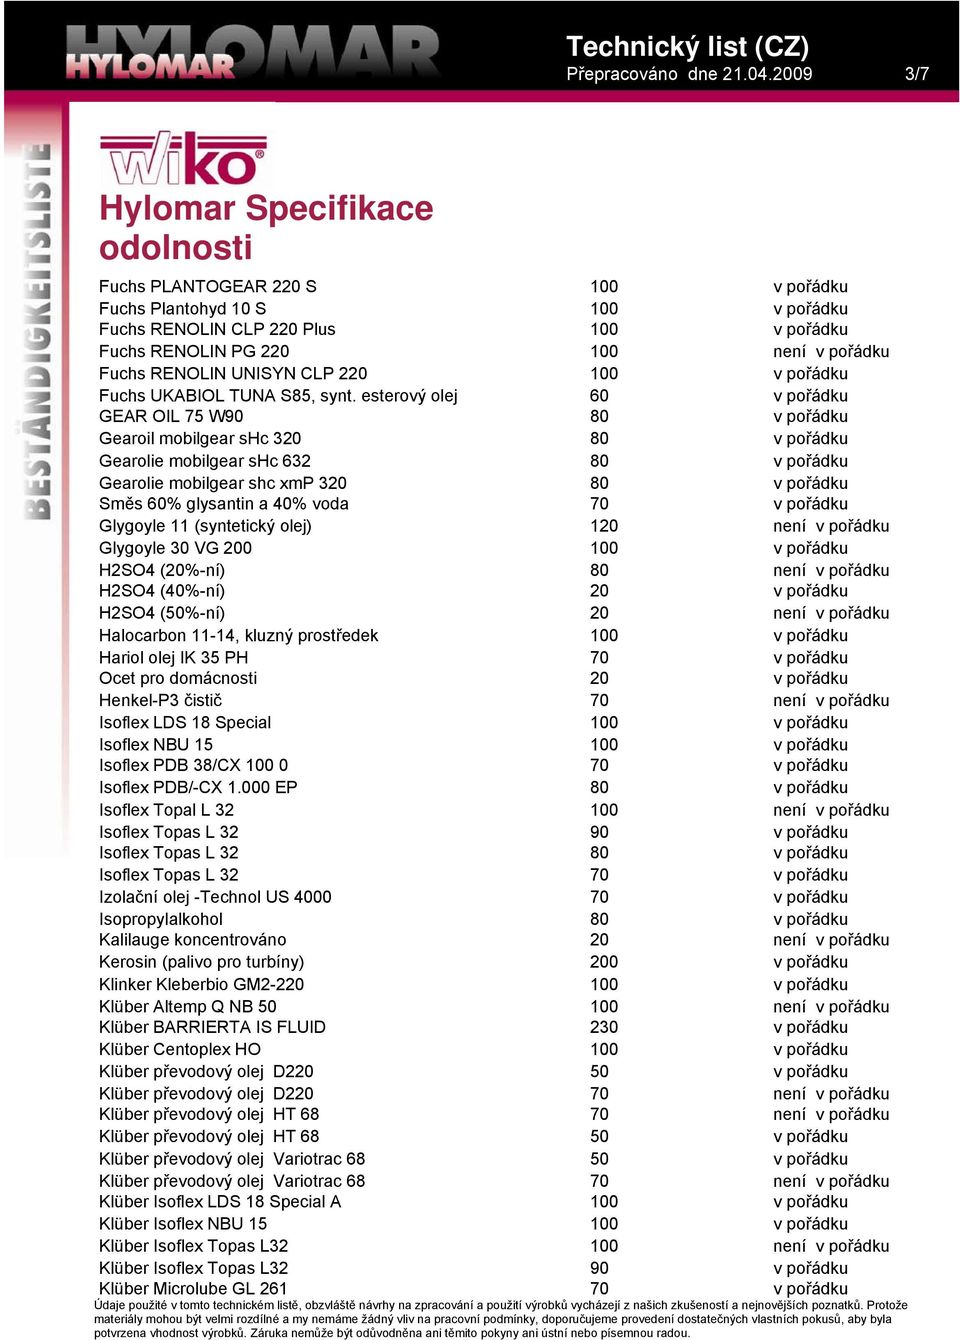 H2SO4 (%-ní) H2SO4 (40%-ní) není H2SO4 (50%-ní) není Halocarbon 11-14, kluzný prostředek Hariol olej IK 35 PH Ocet pro domácnosti Henkel-P3 čistič není Isoflex LDS 18 Special Isoflex NBU 15 Isoflex